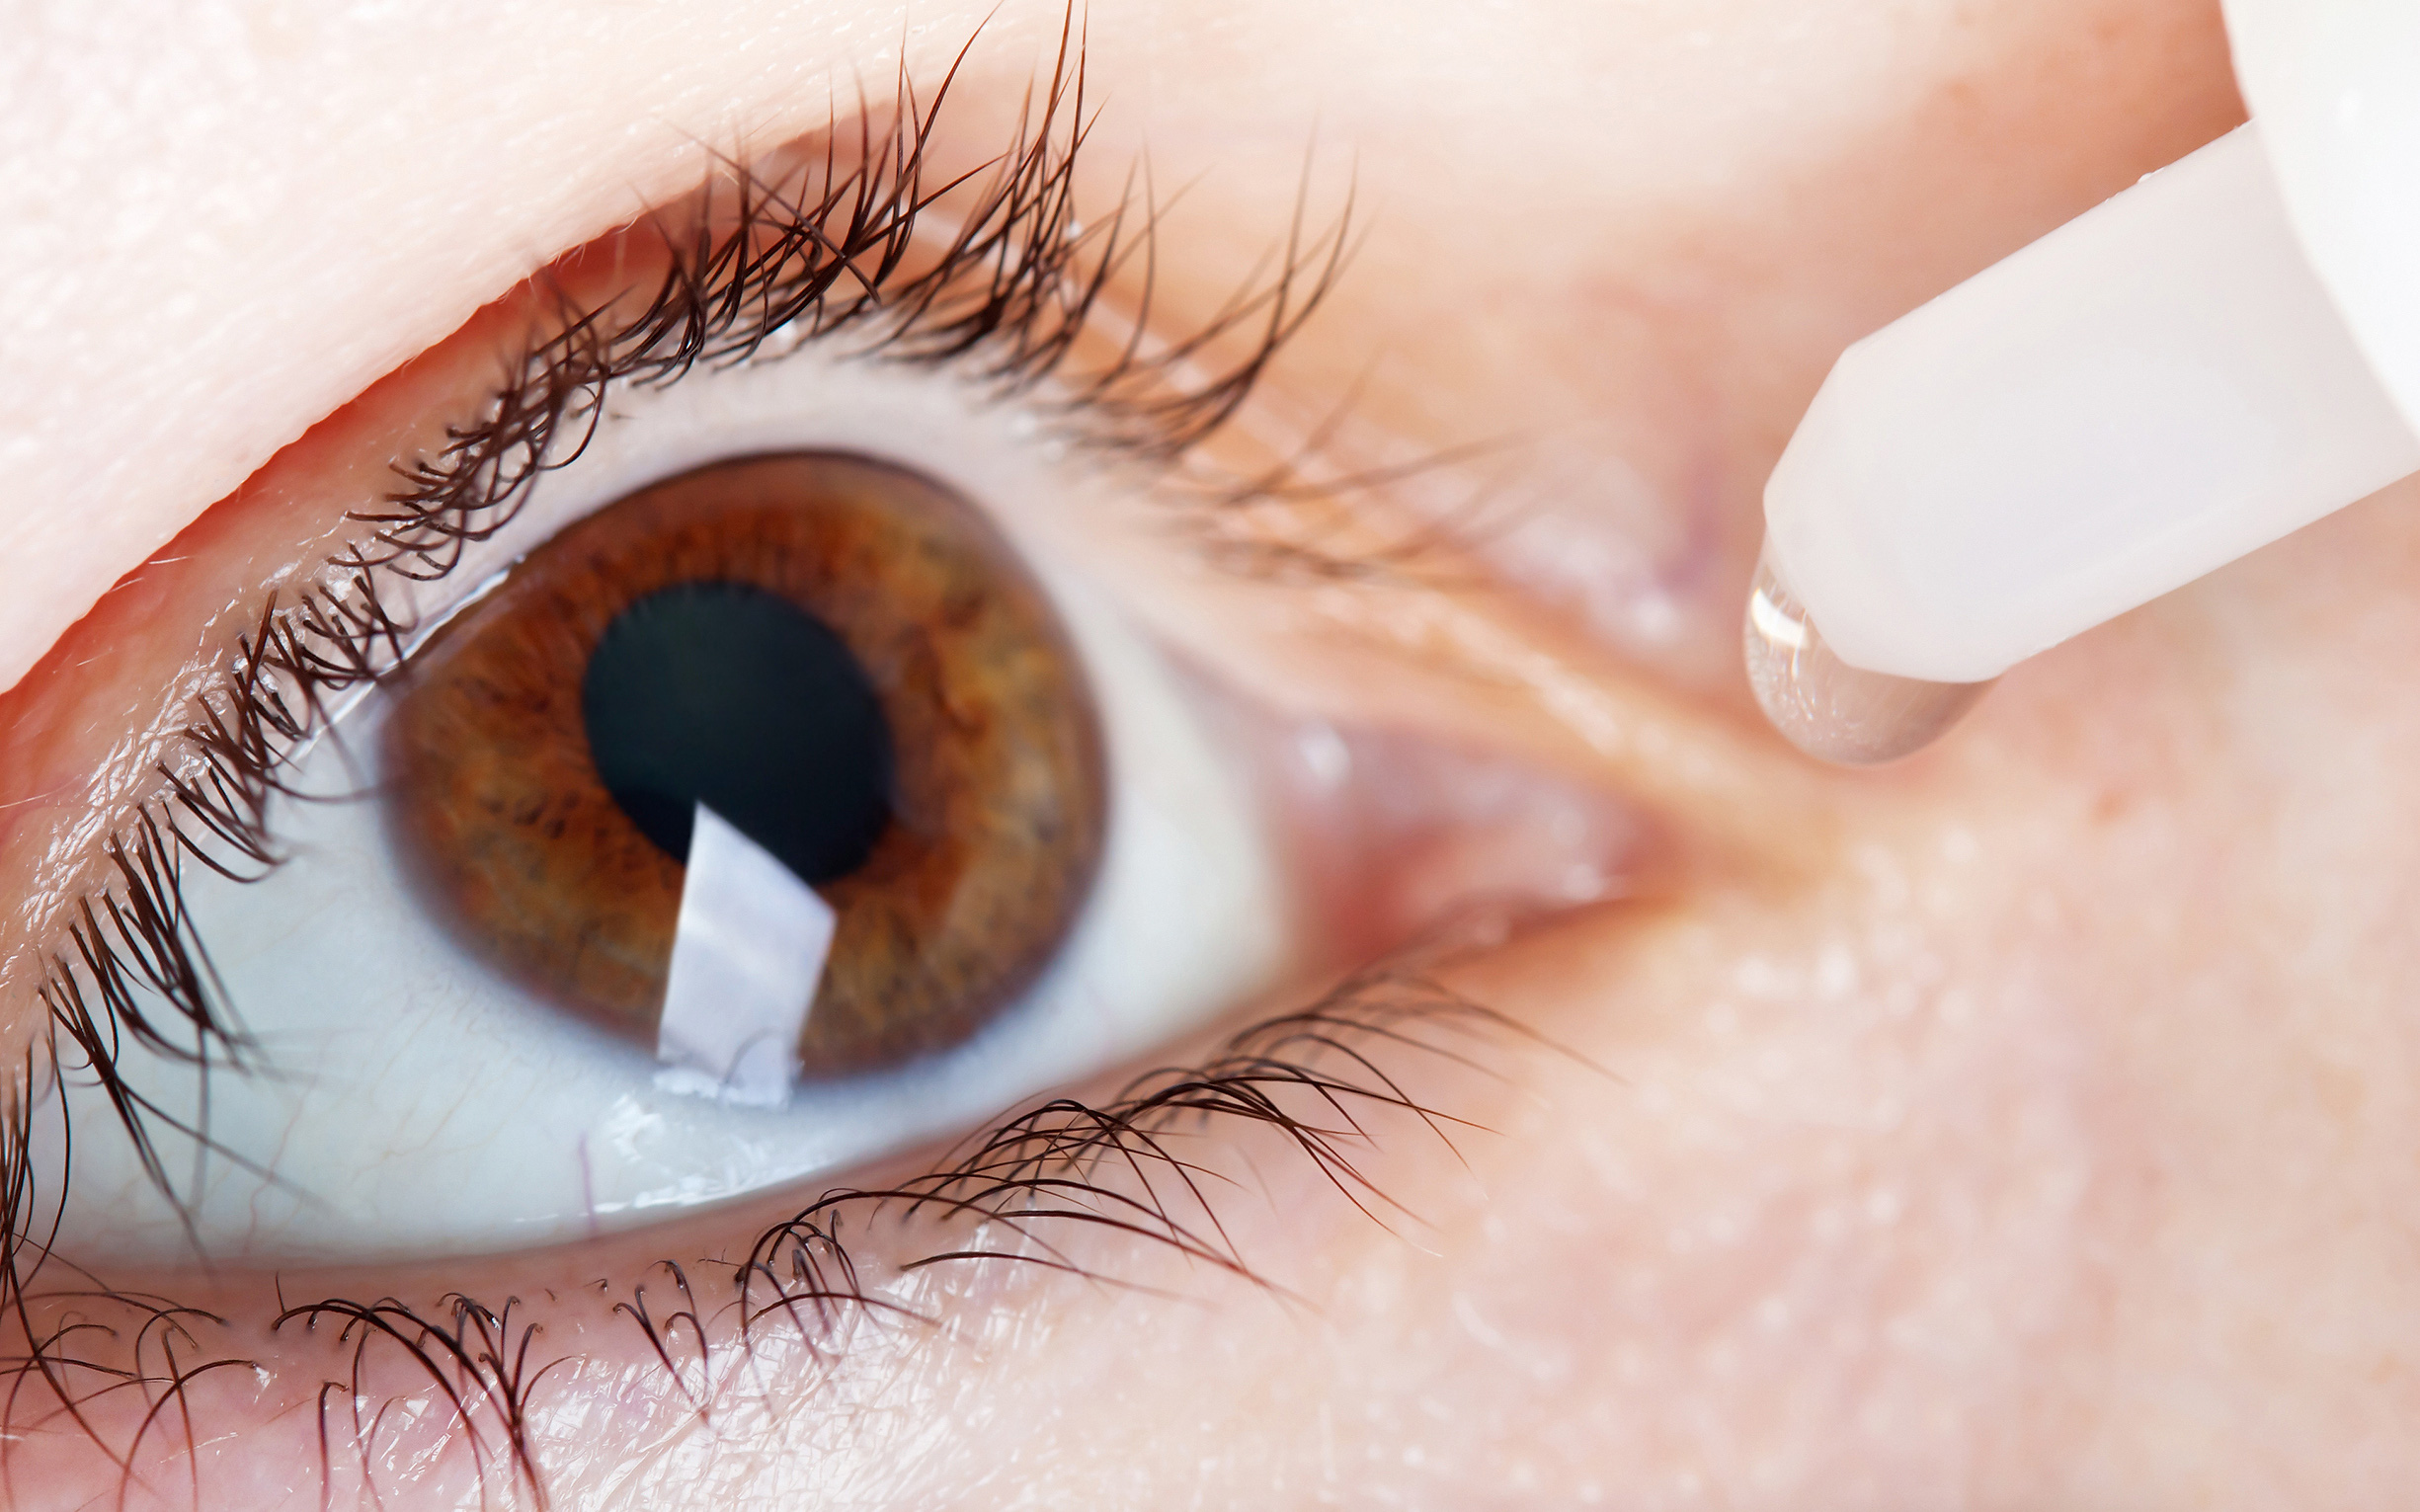 Thực hư thuốc nhỏ mắt chữa cận thị: Có hay không?